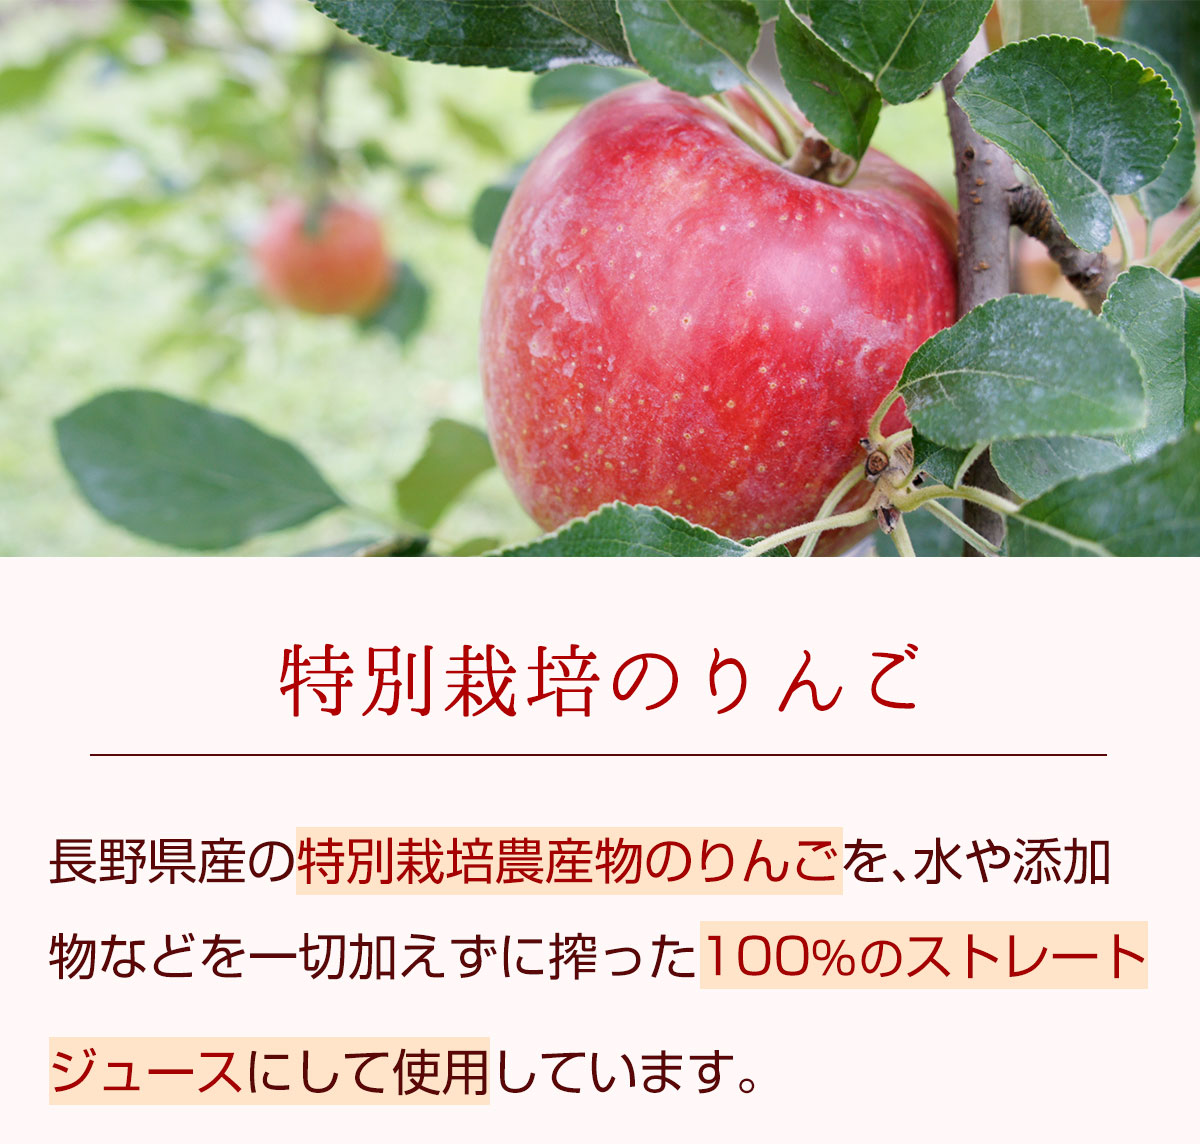 特別栽培のりんご